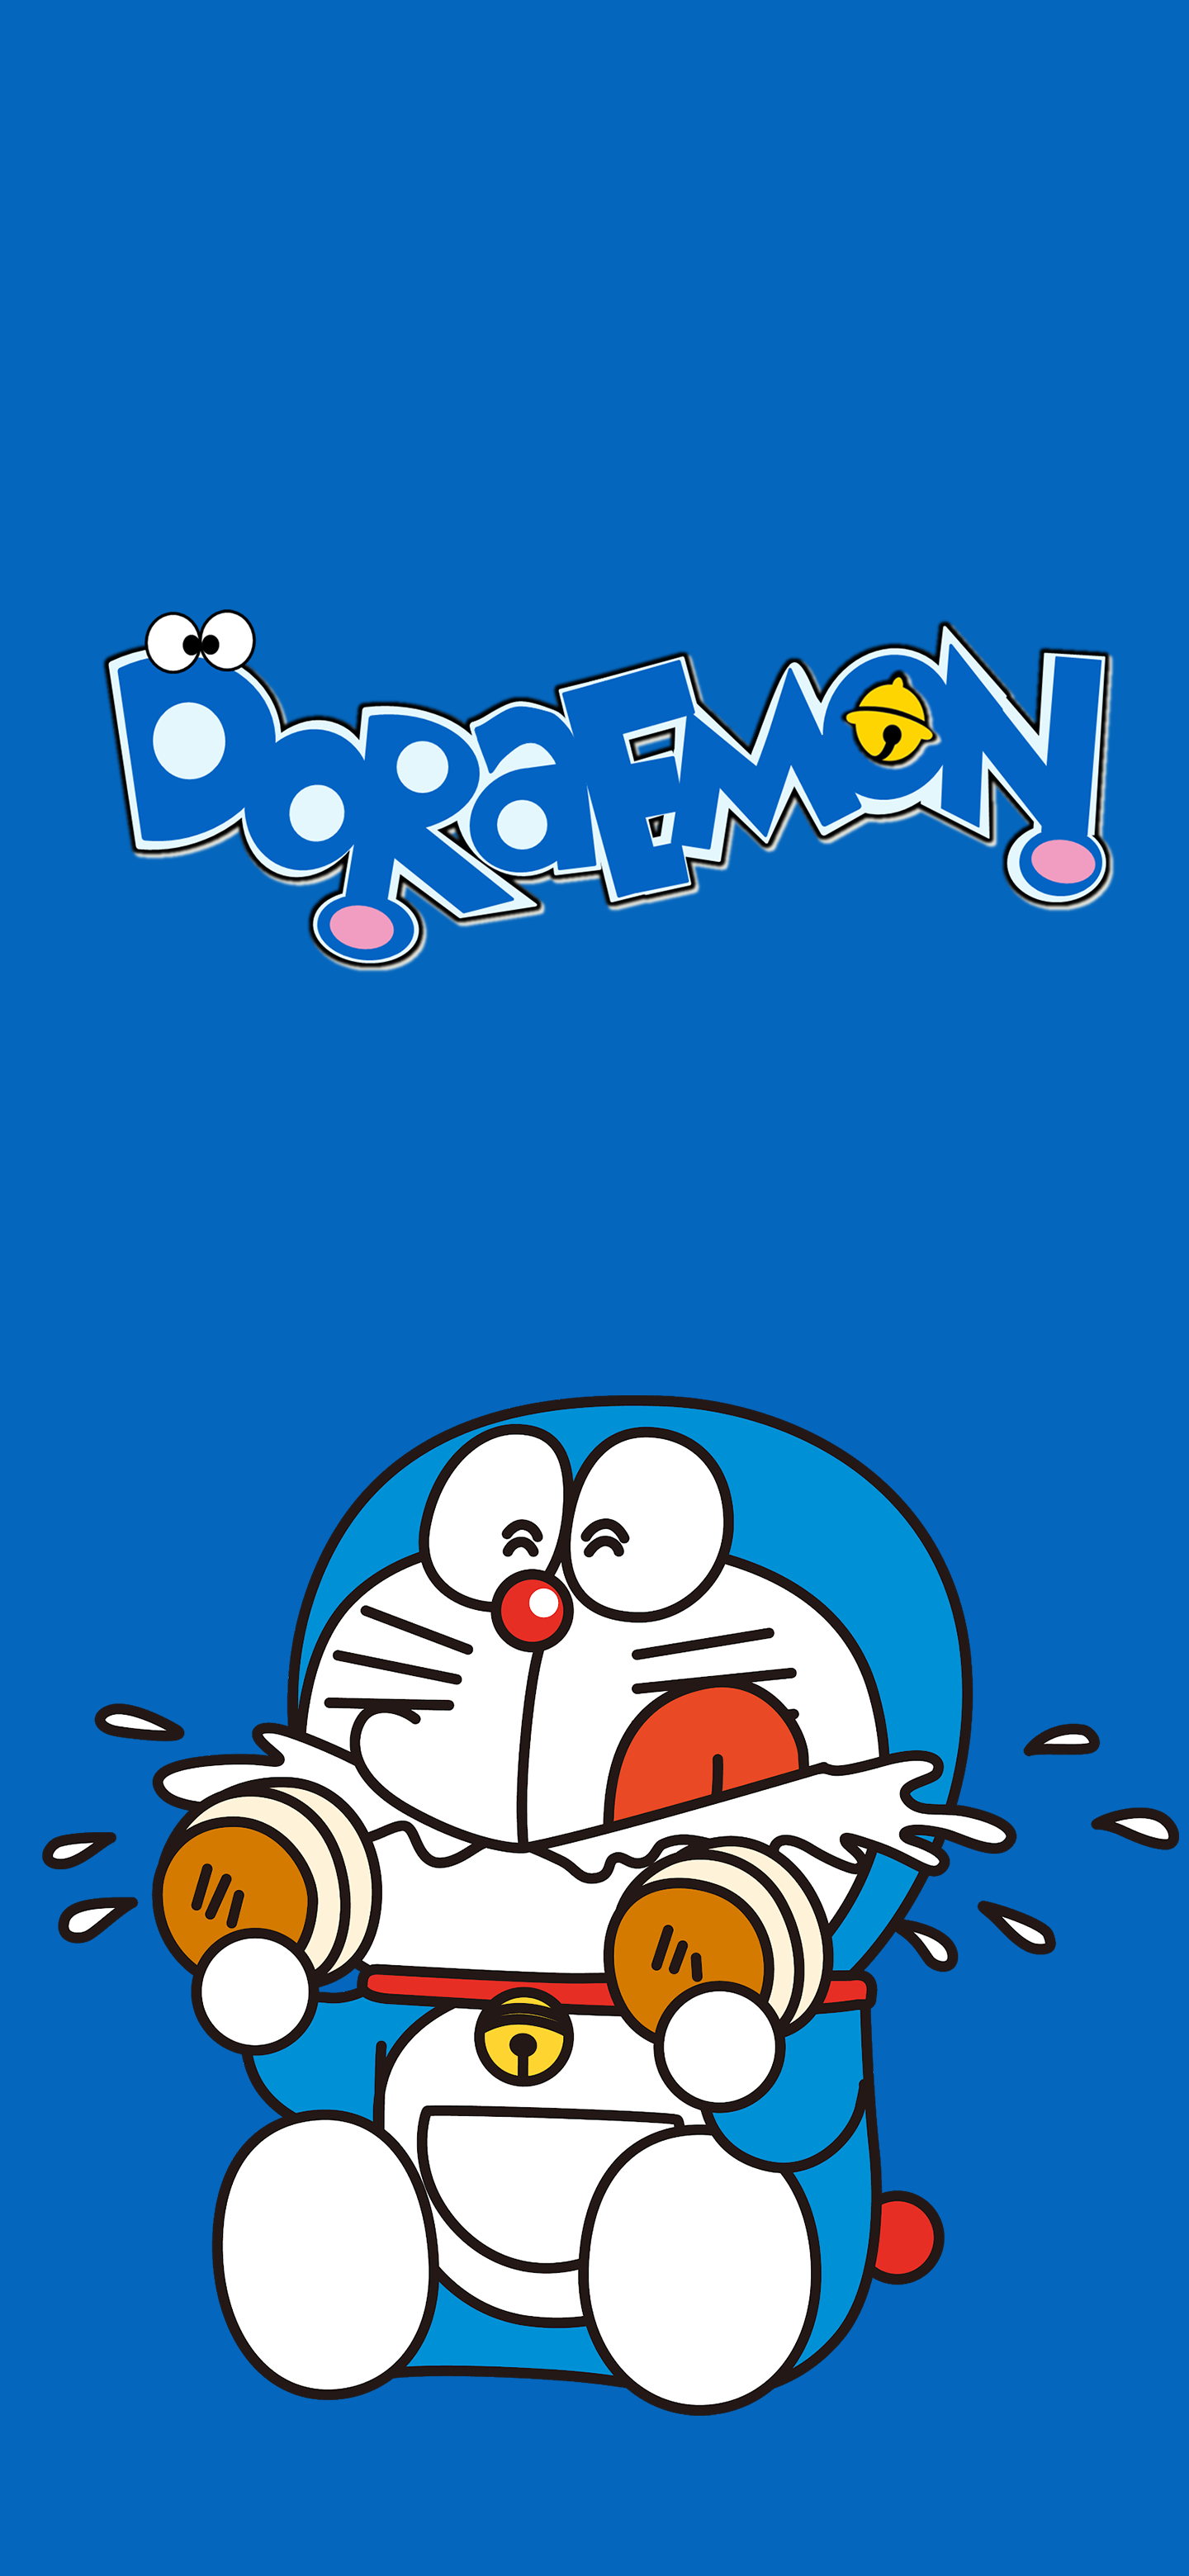 Tải 25 hình nền Doremon dễ thương đẹp nhất full HD  Ảnh Doremon đẹp   Doraemon cartoon Doraemon wallpapers Cartoon wallpaper